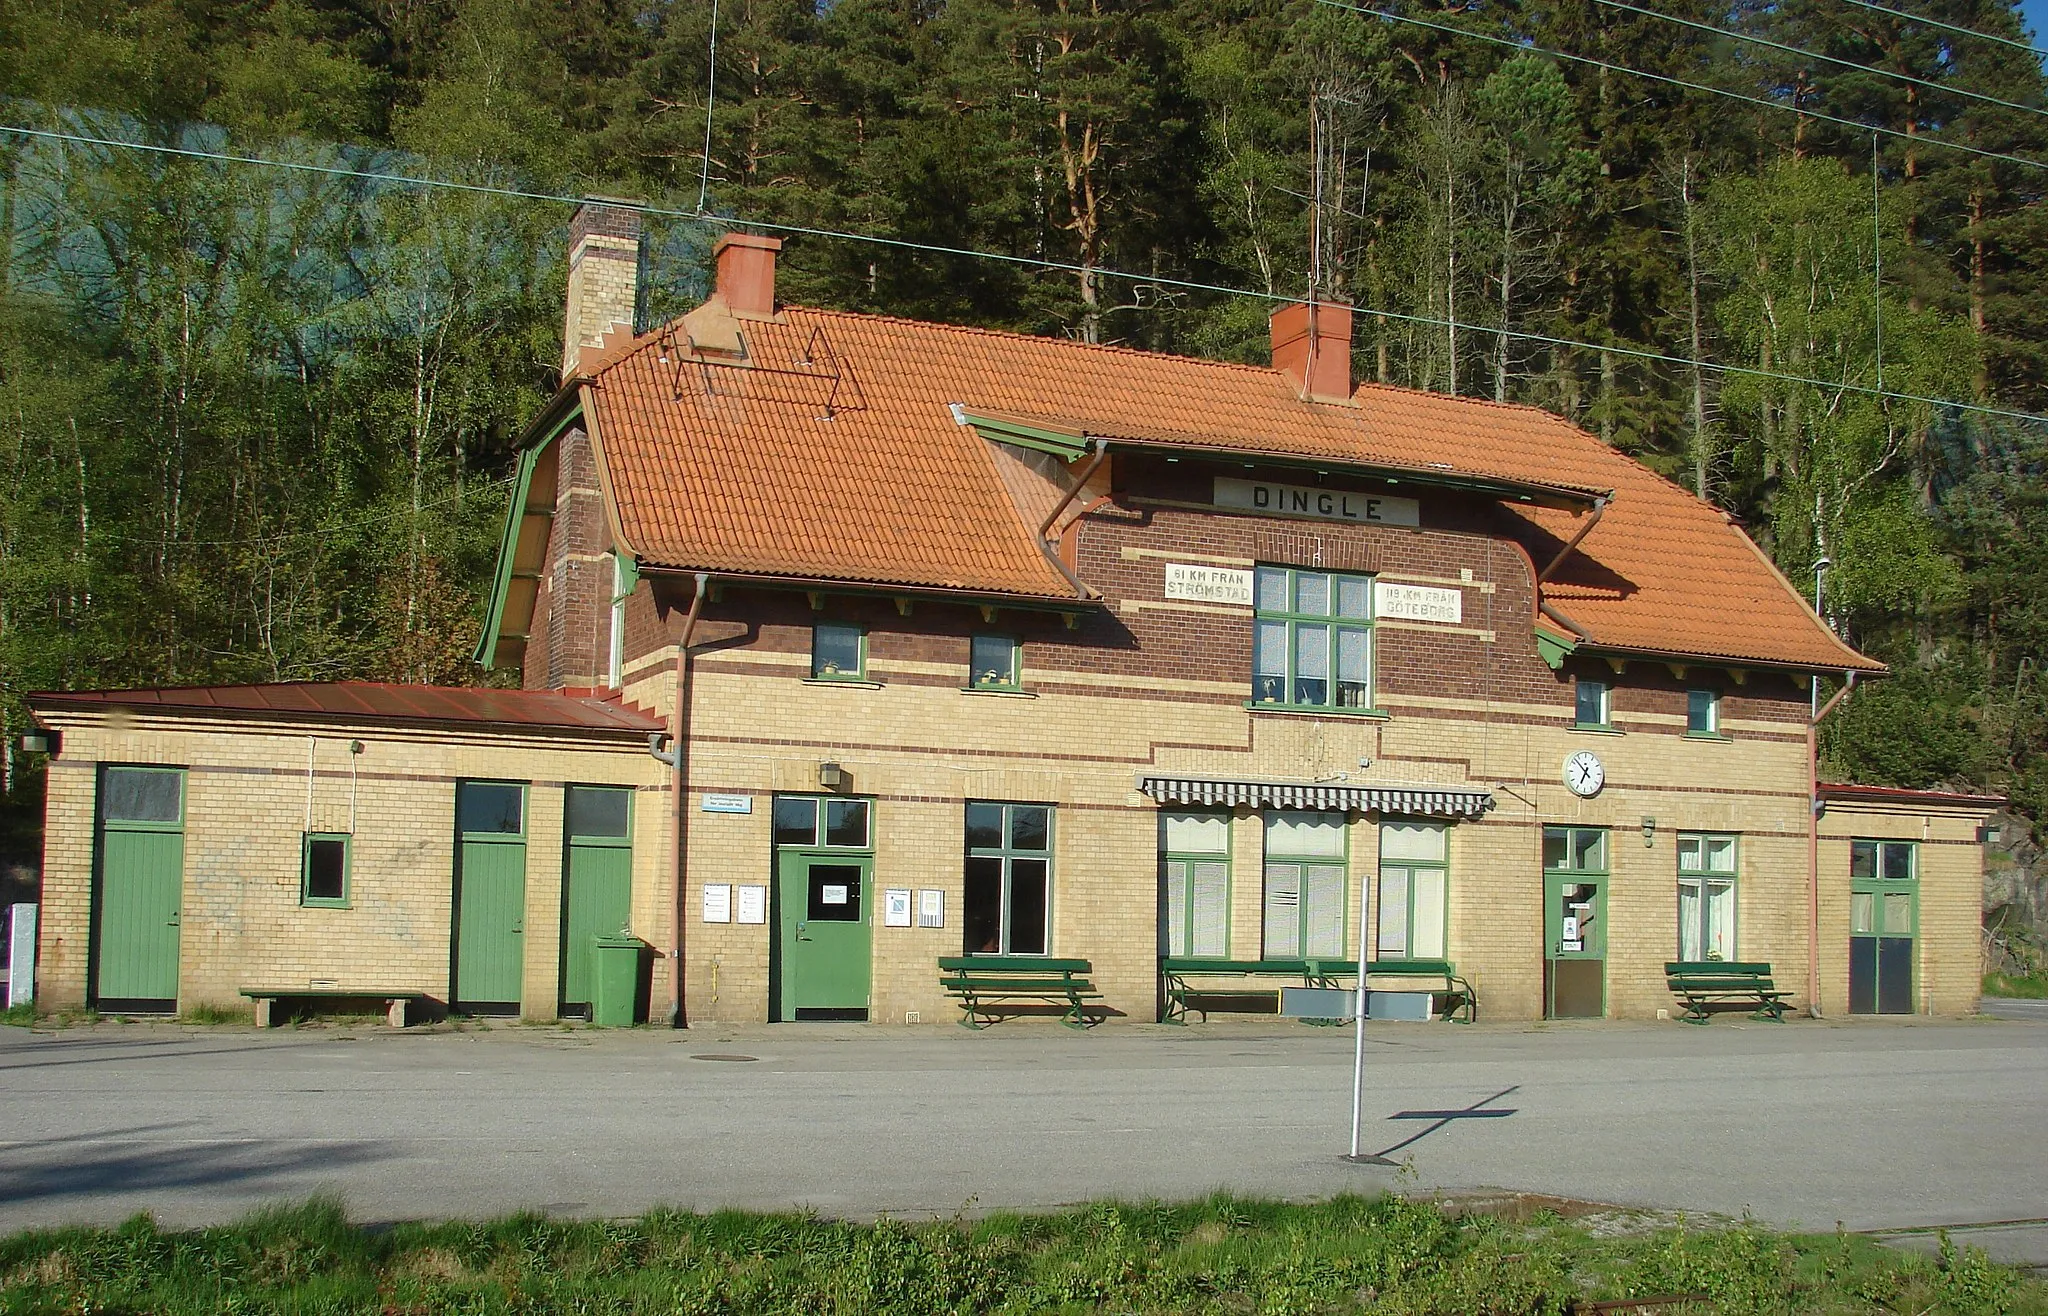 Photo showing: Dingle station, Munkedals kommun (municipality)